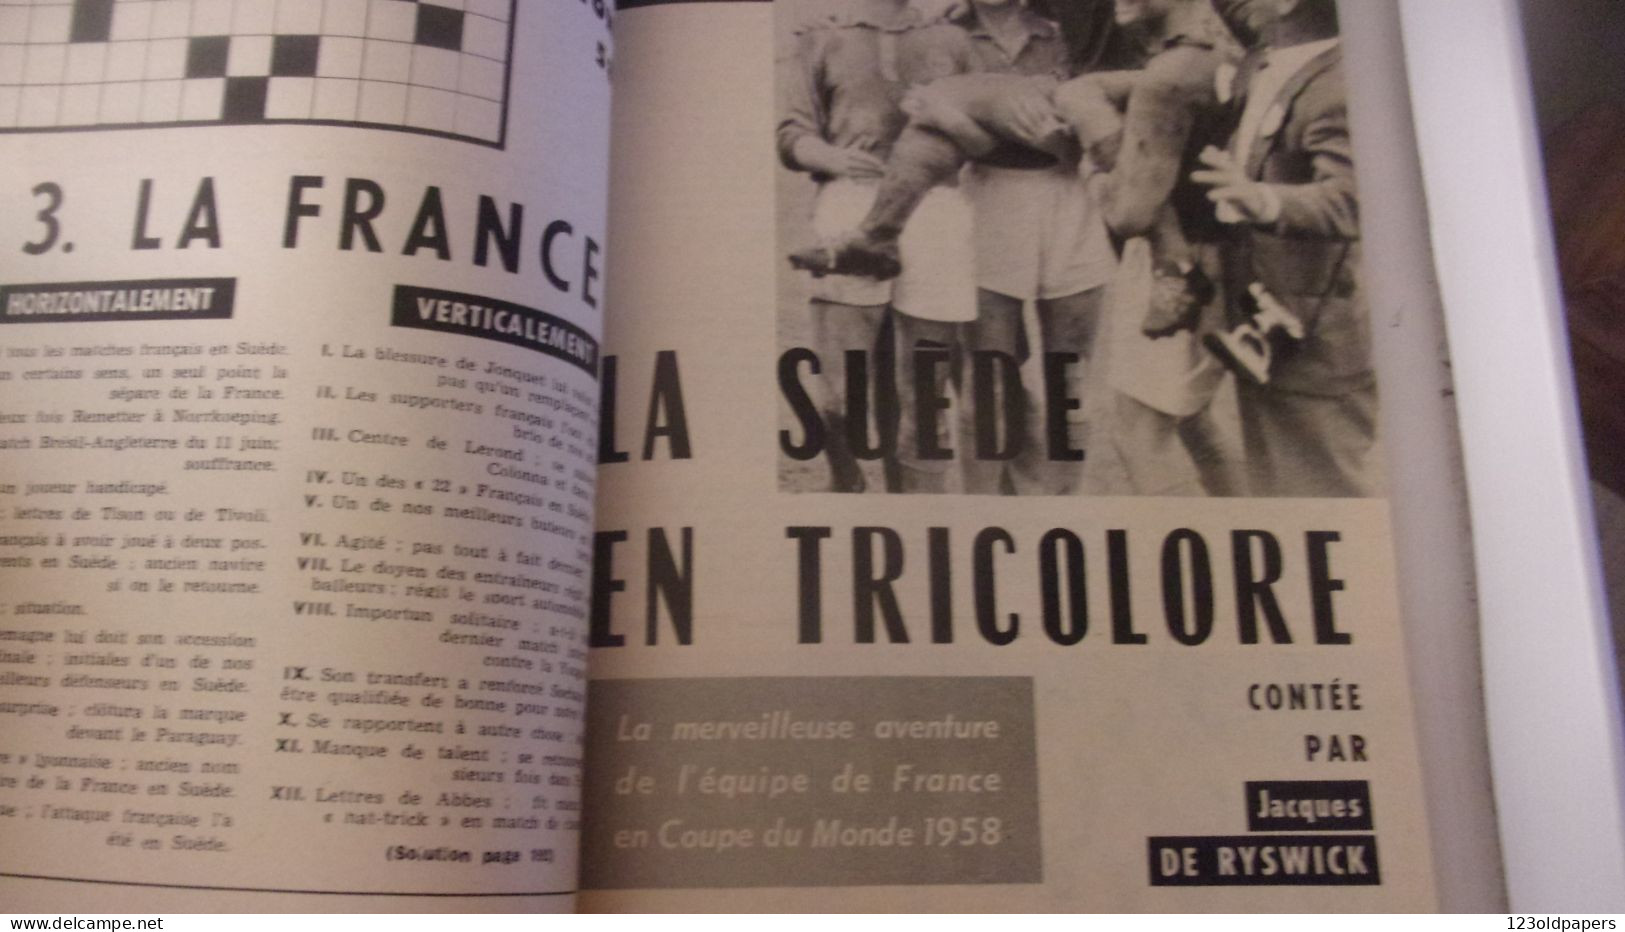 Revue FRANCE FOOTBALL 1959. Numéro Spécial. EQUIPES.. 192 PAGES ILLUSTRE COUVERTURE PAUL ORDNER - Deportes